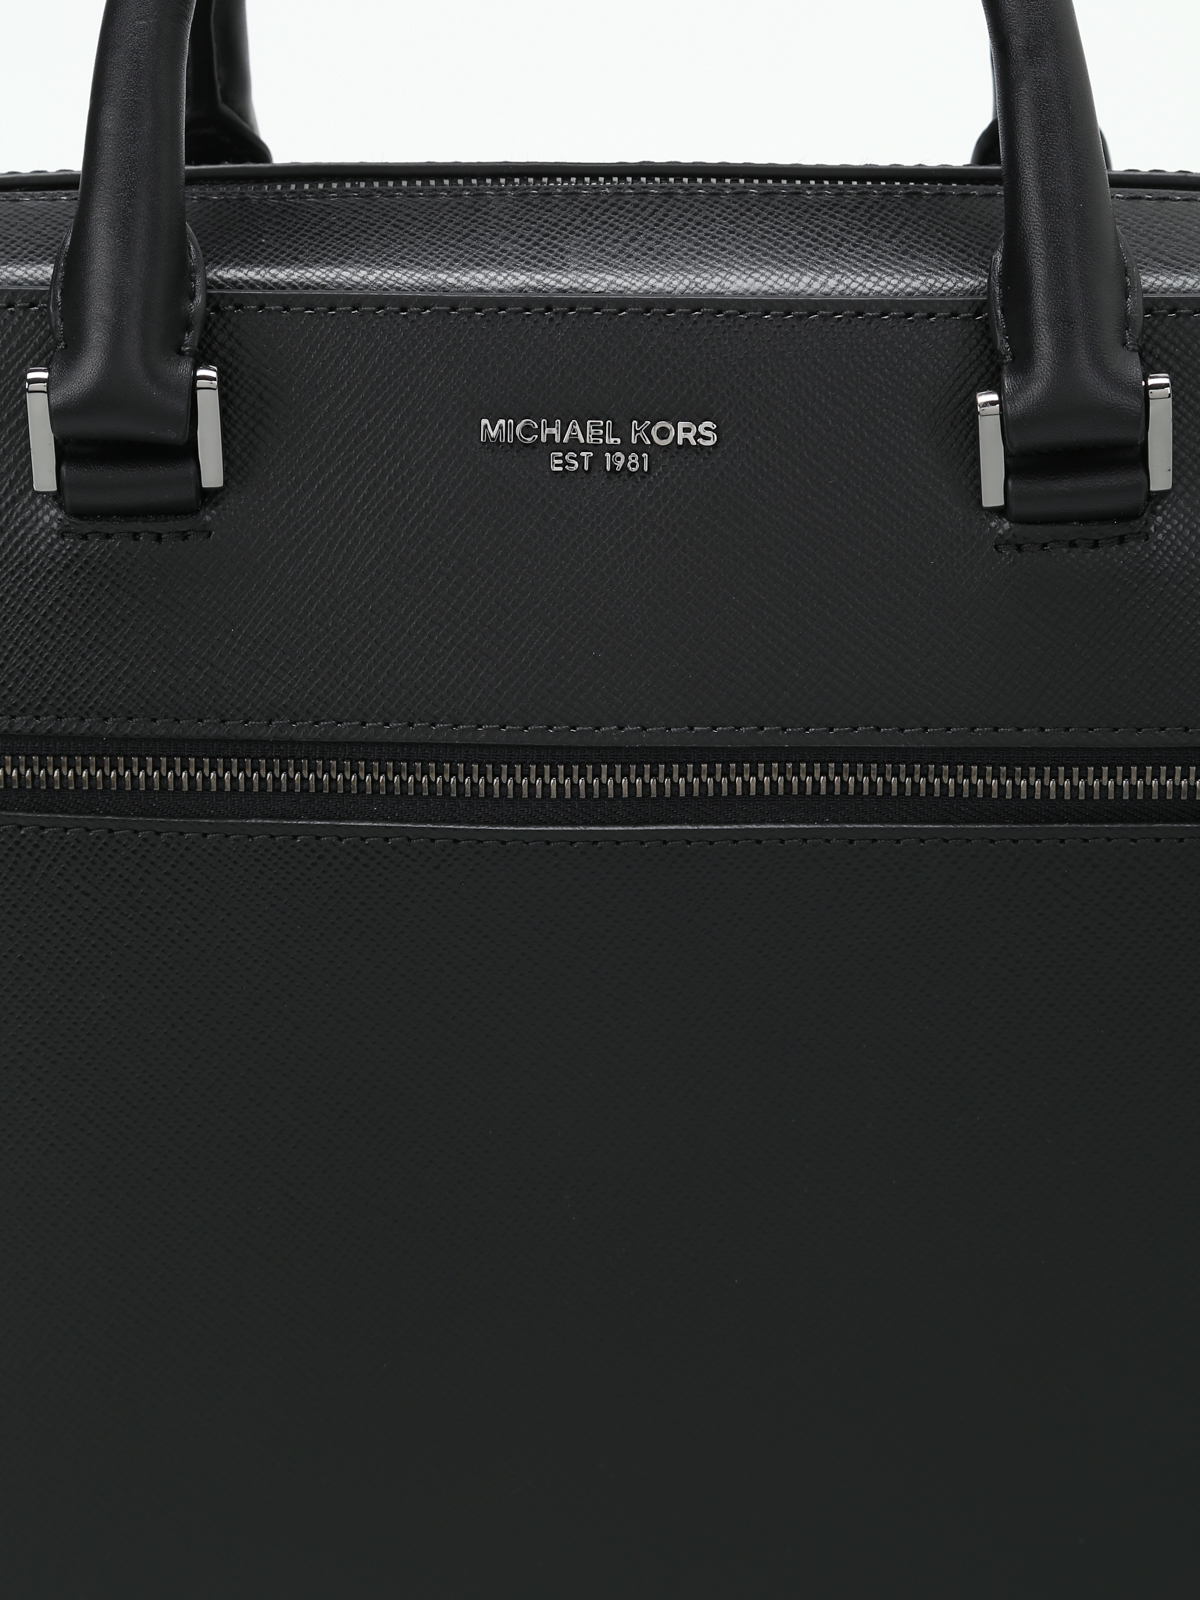 michael kors briefcase purse